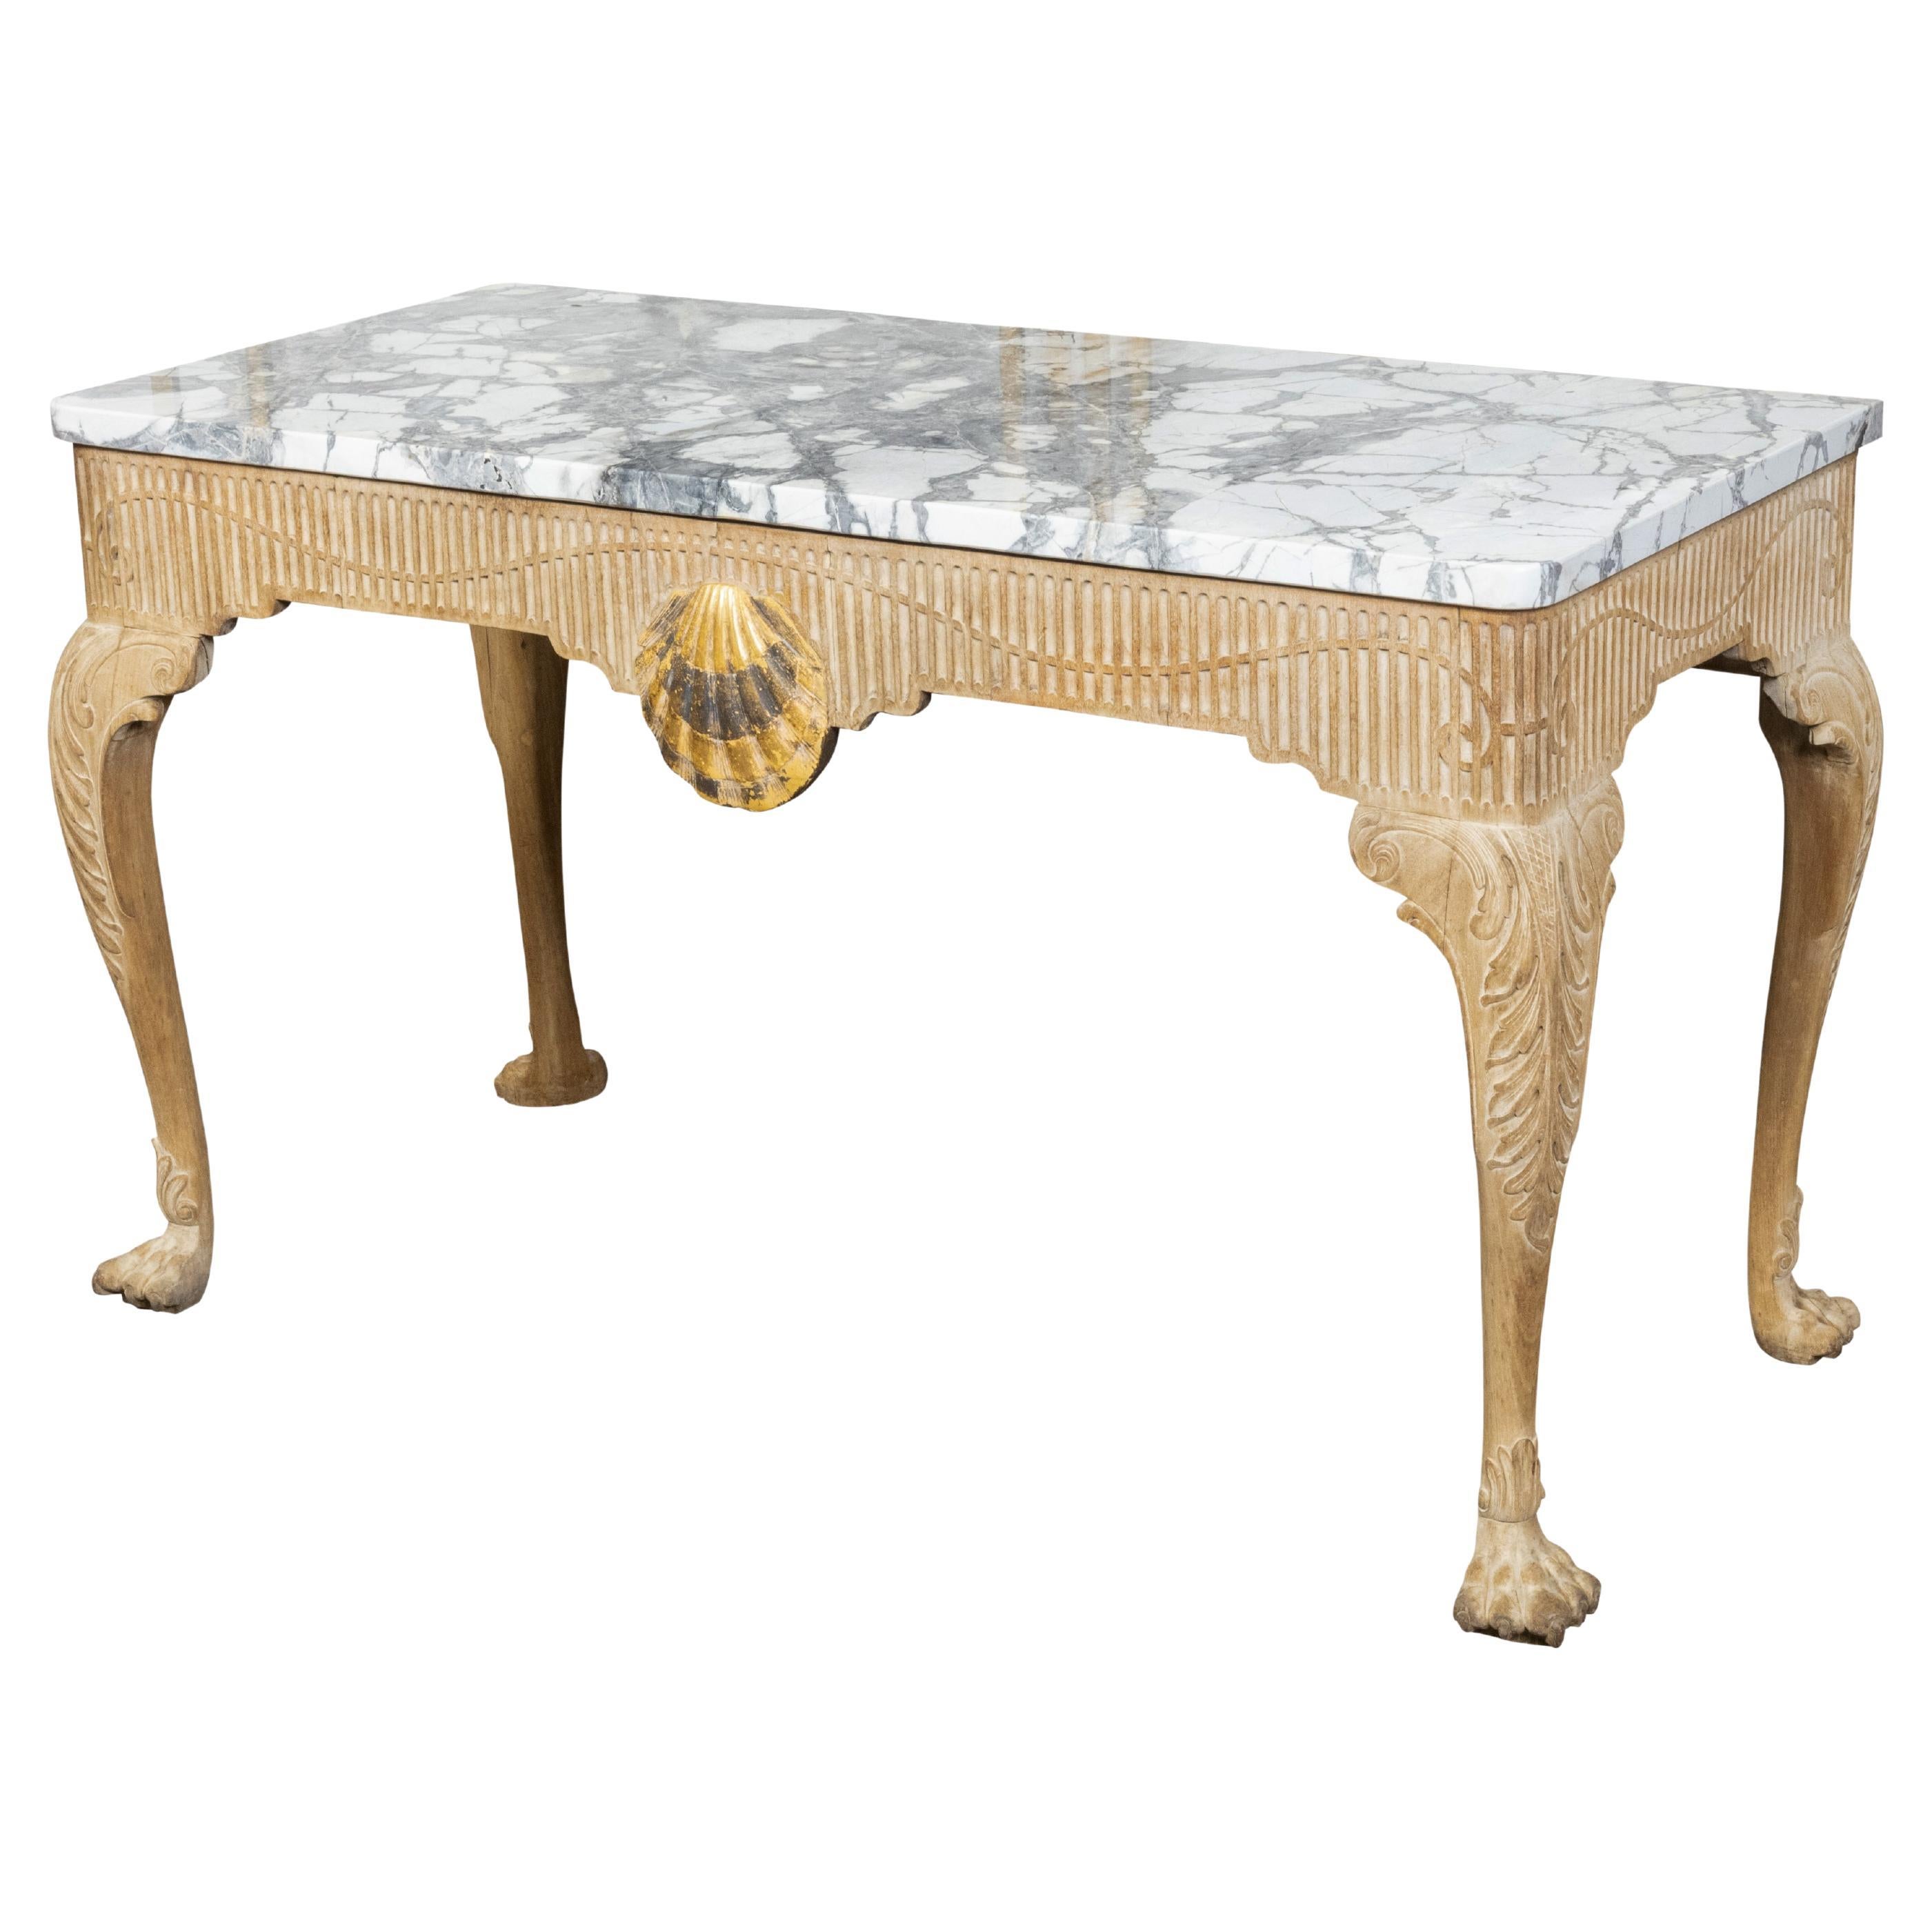 Table console anglaise de la fin du XVIIIe siècle avec plateau en marbre et tablier sculpté